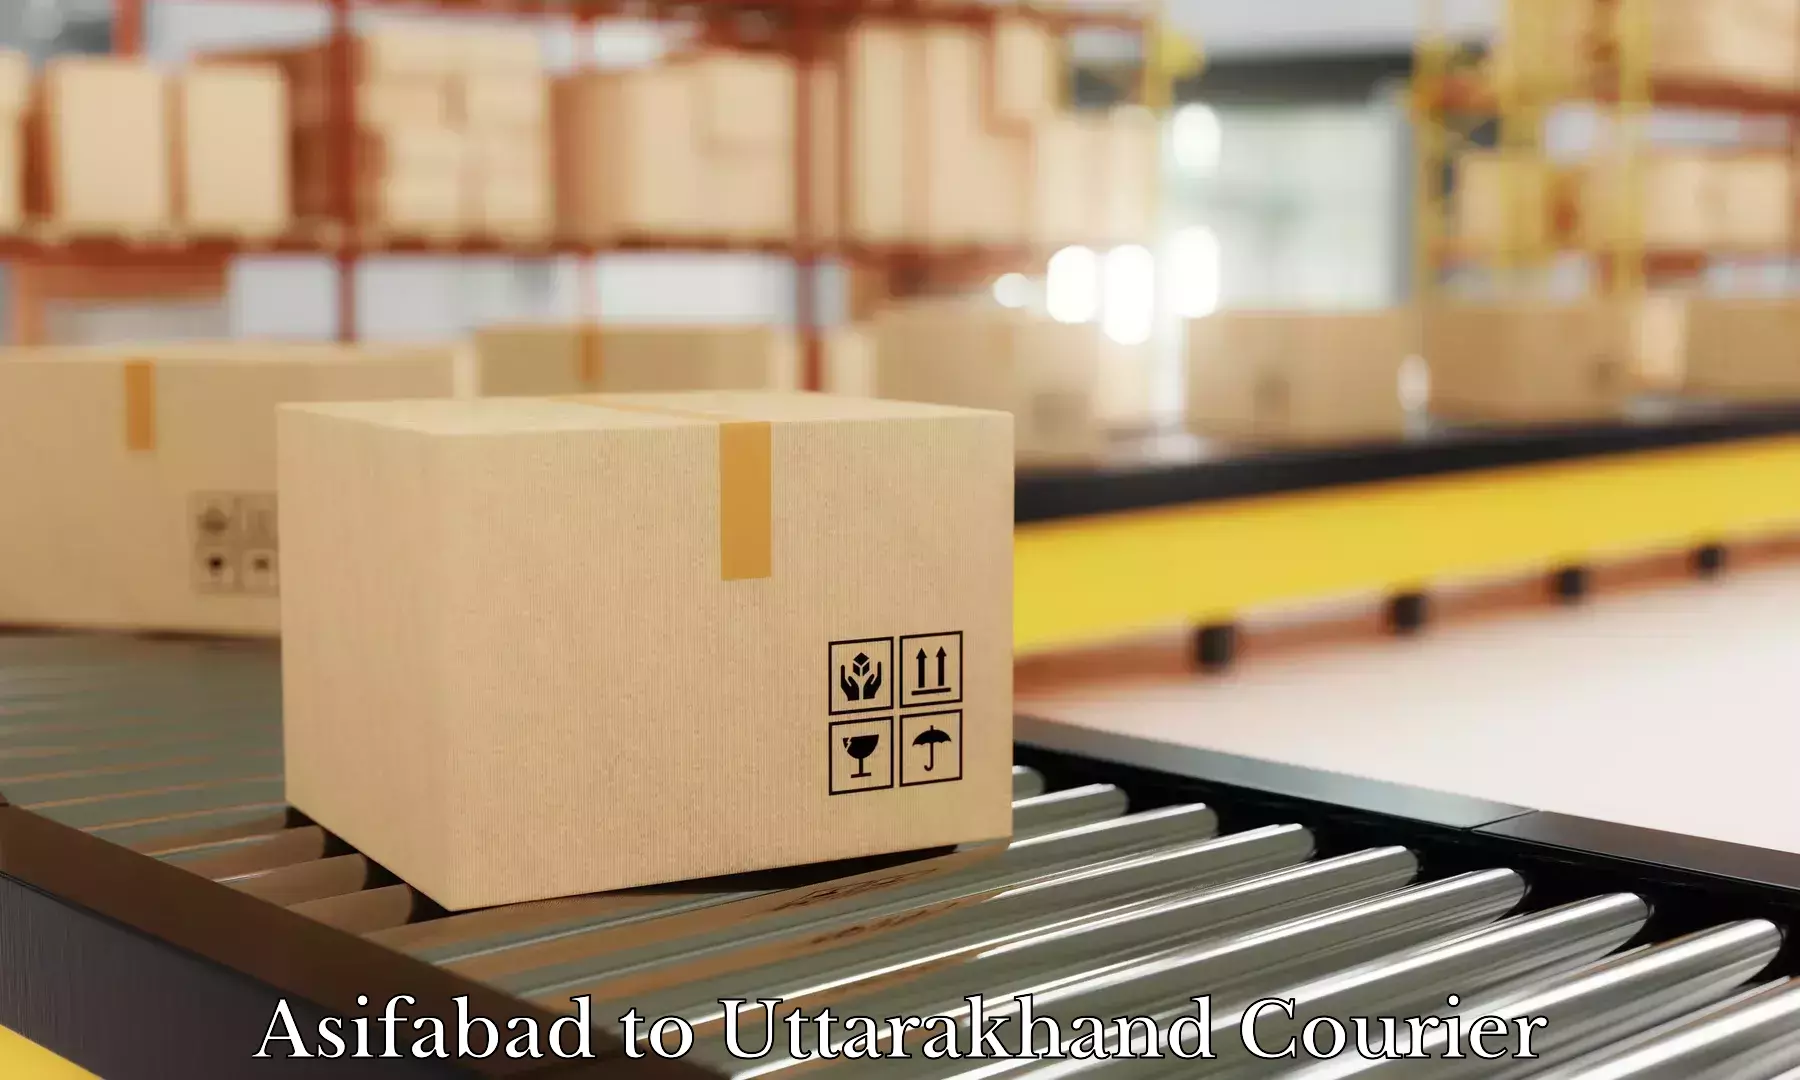 Luggage delivery optimization Asifabad to Paithani